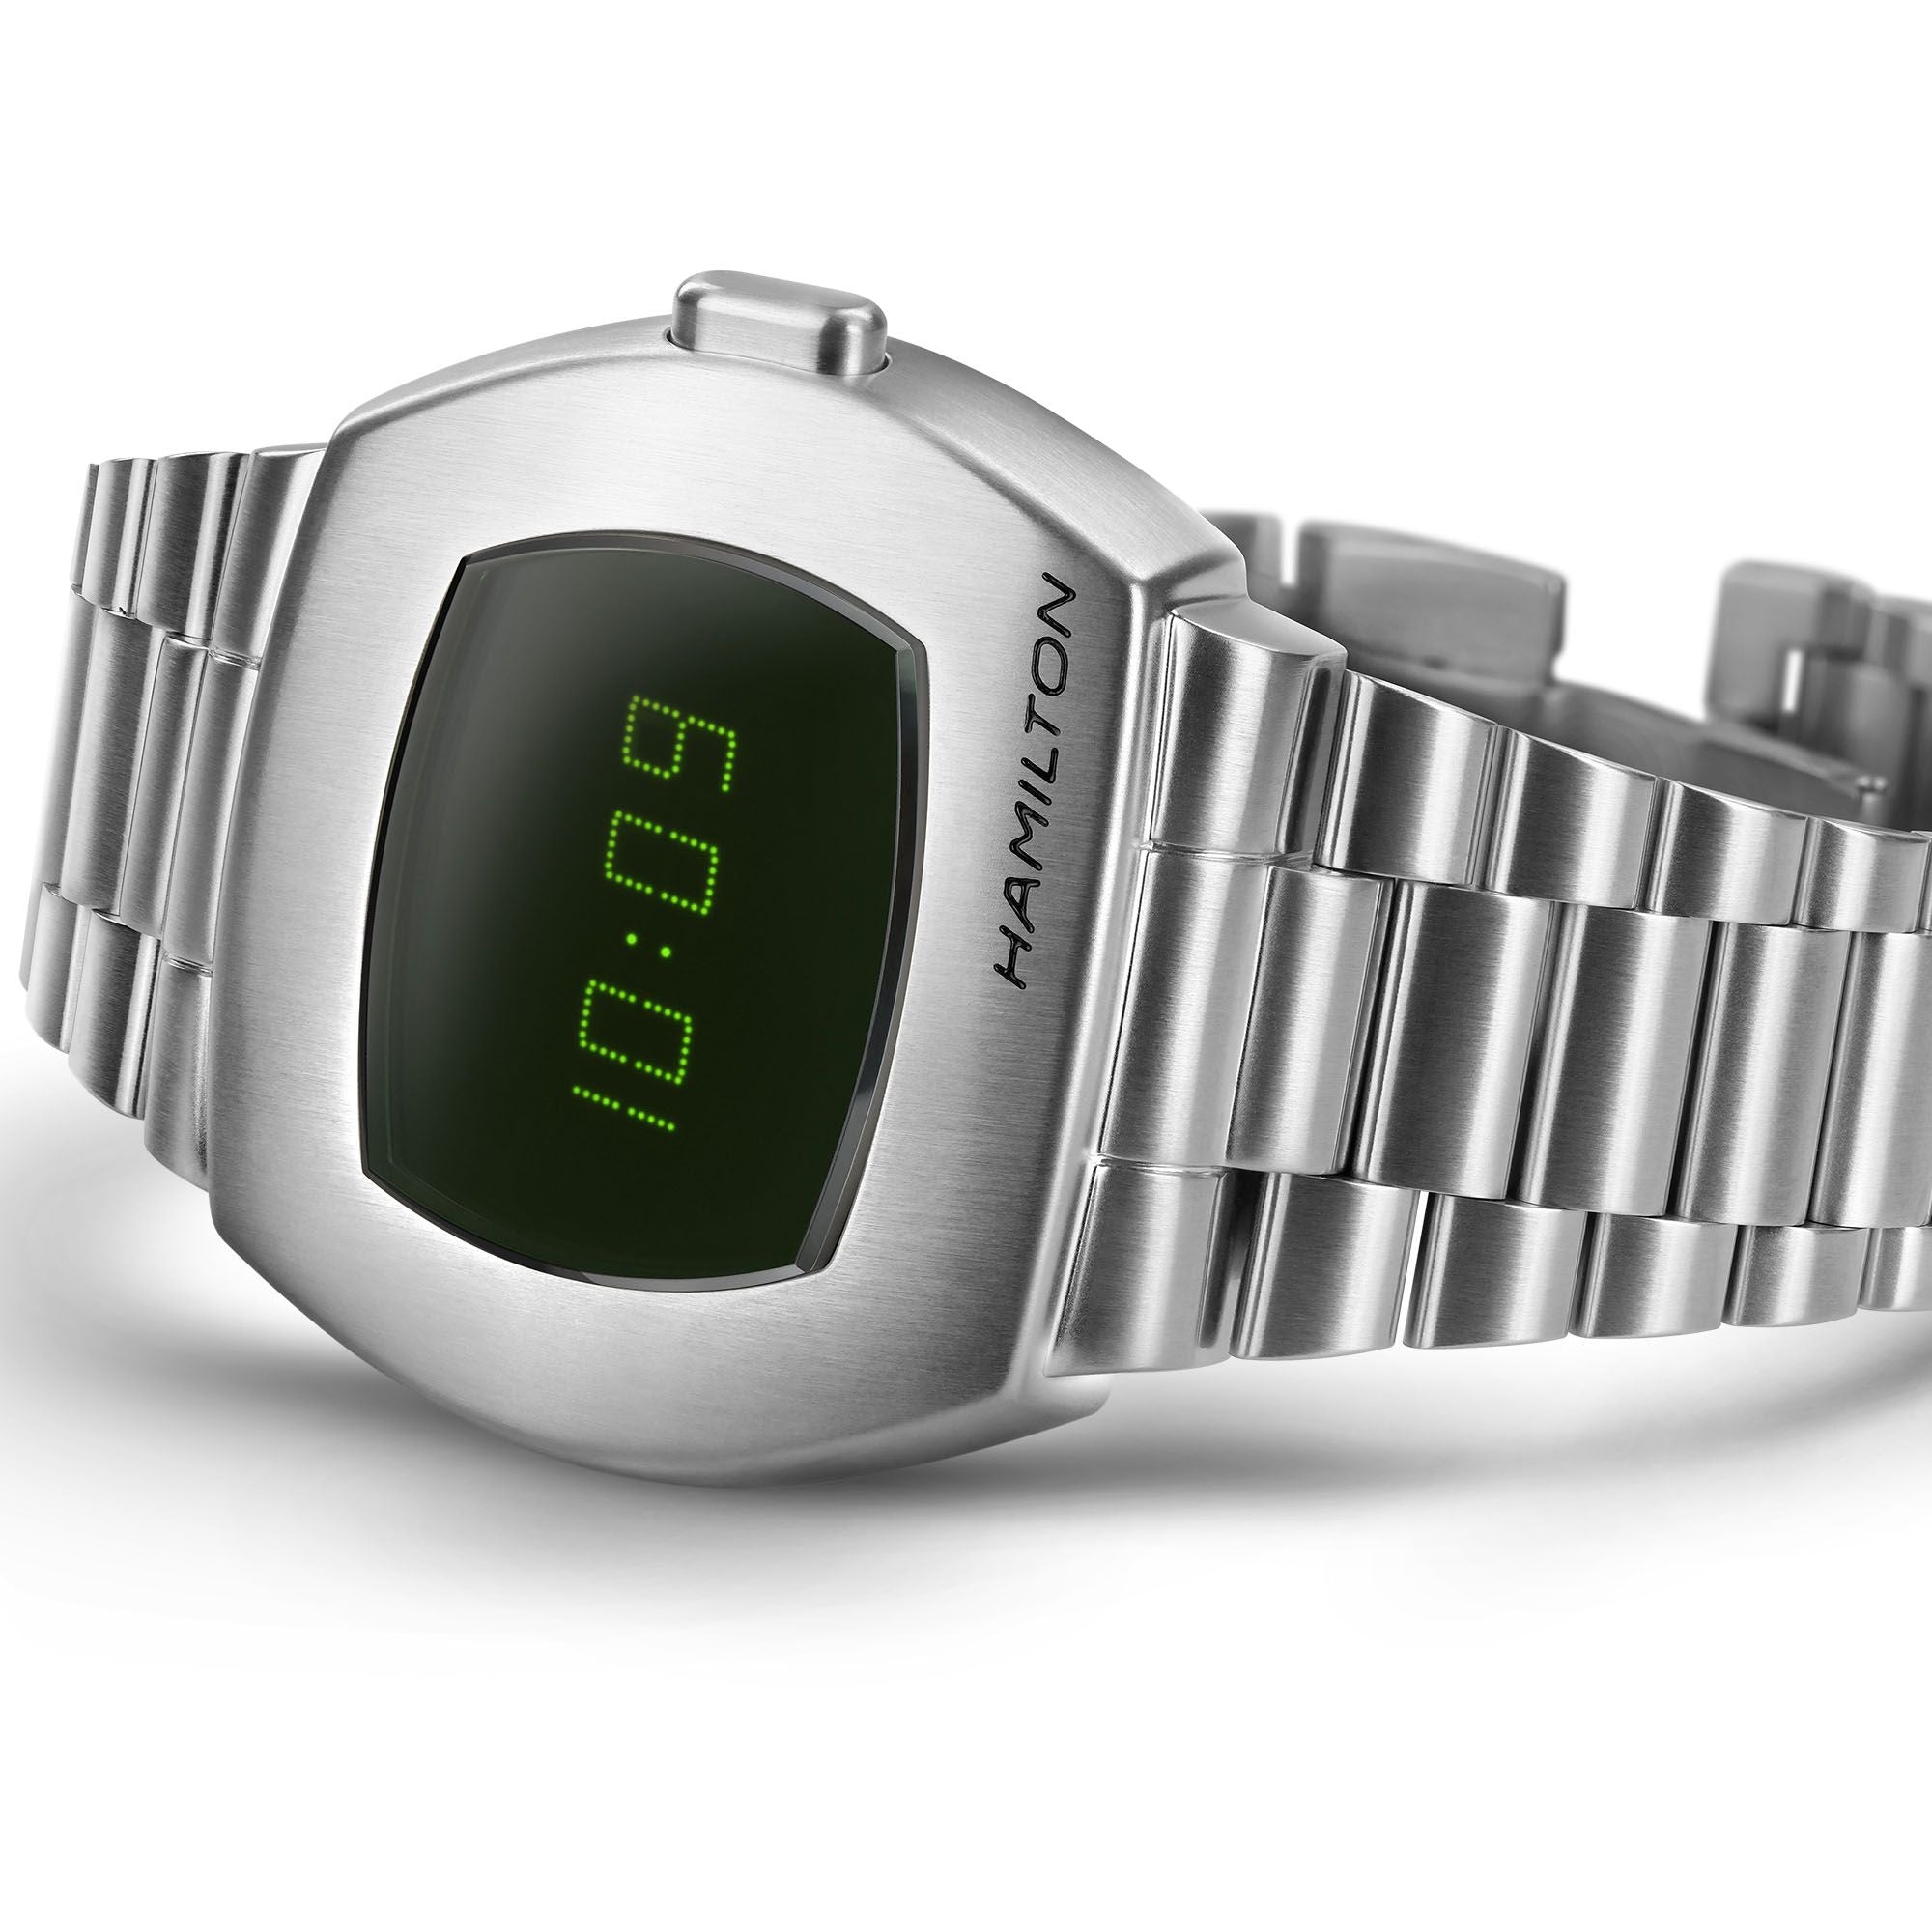 【新品】ハミルトン HAMILTON 腕時計 メンズ H52414131 アメリカン クラシック PSR デジタルクオーツ AMERICAN CLASSIC PSR DIGITAL QUARTZ クオーツ 液晶/グリーンxシルバー デジタル表示